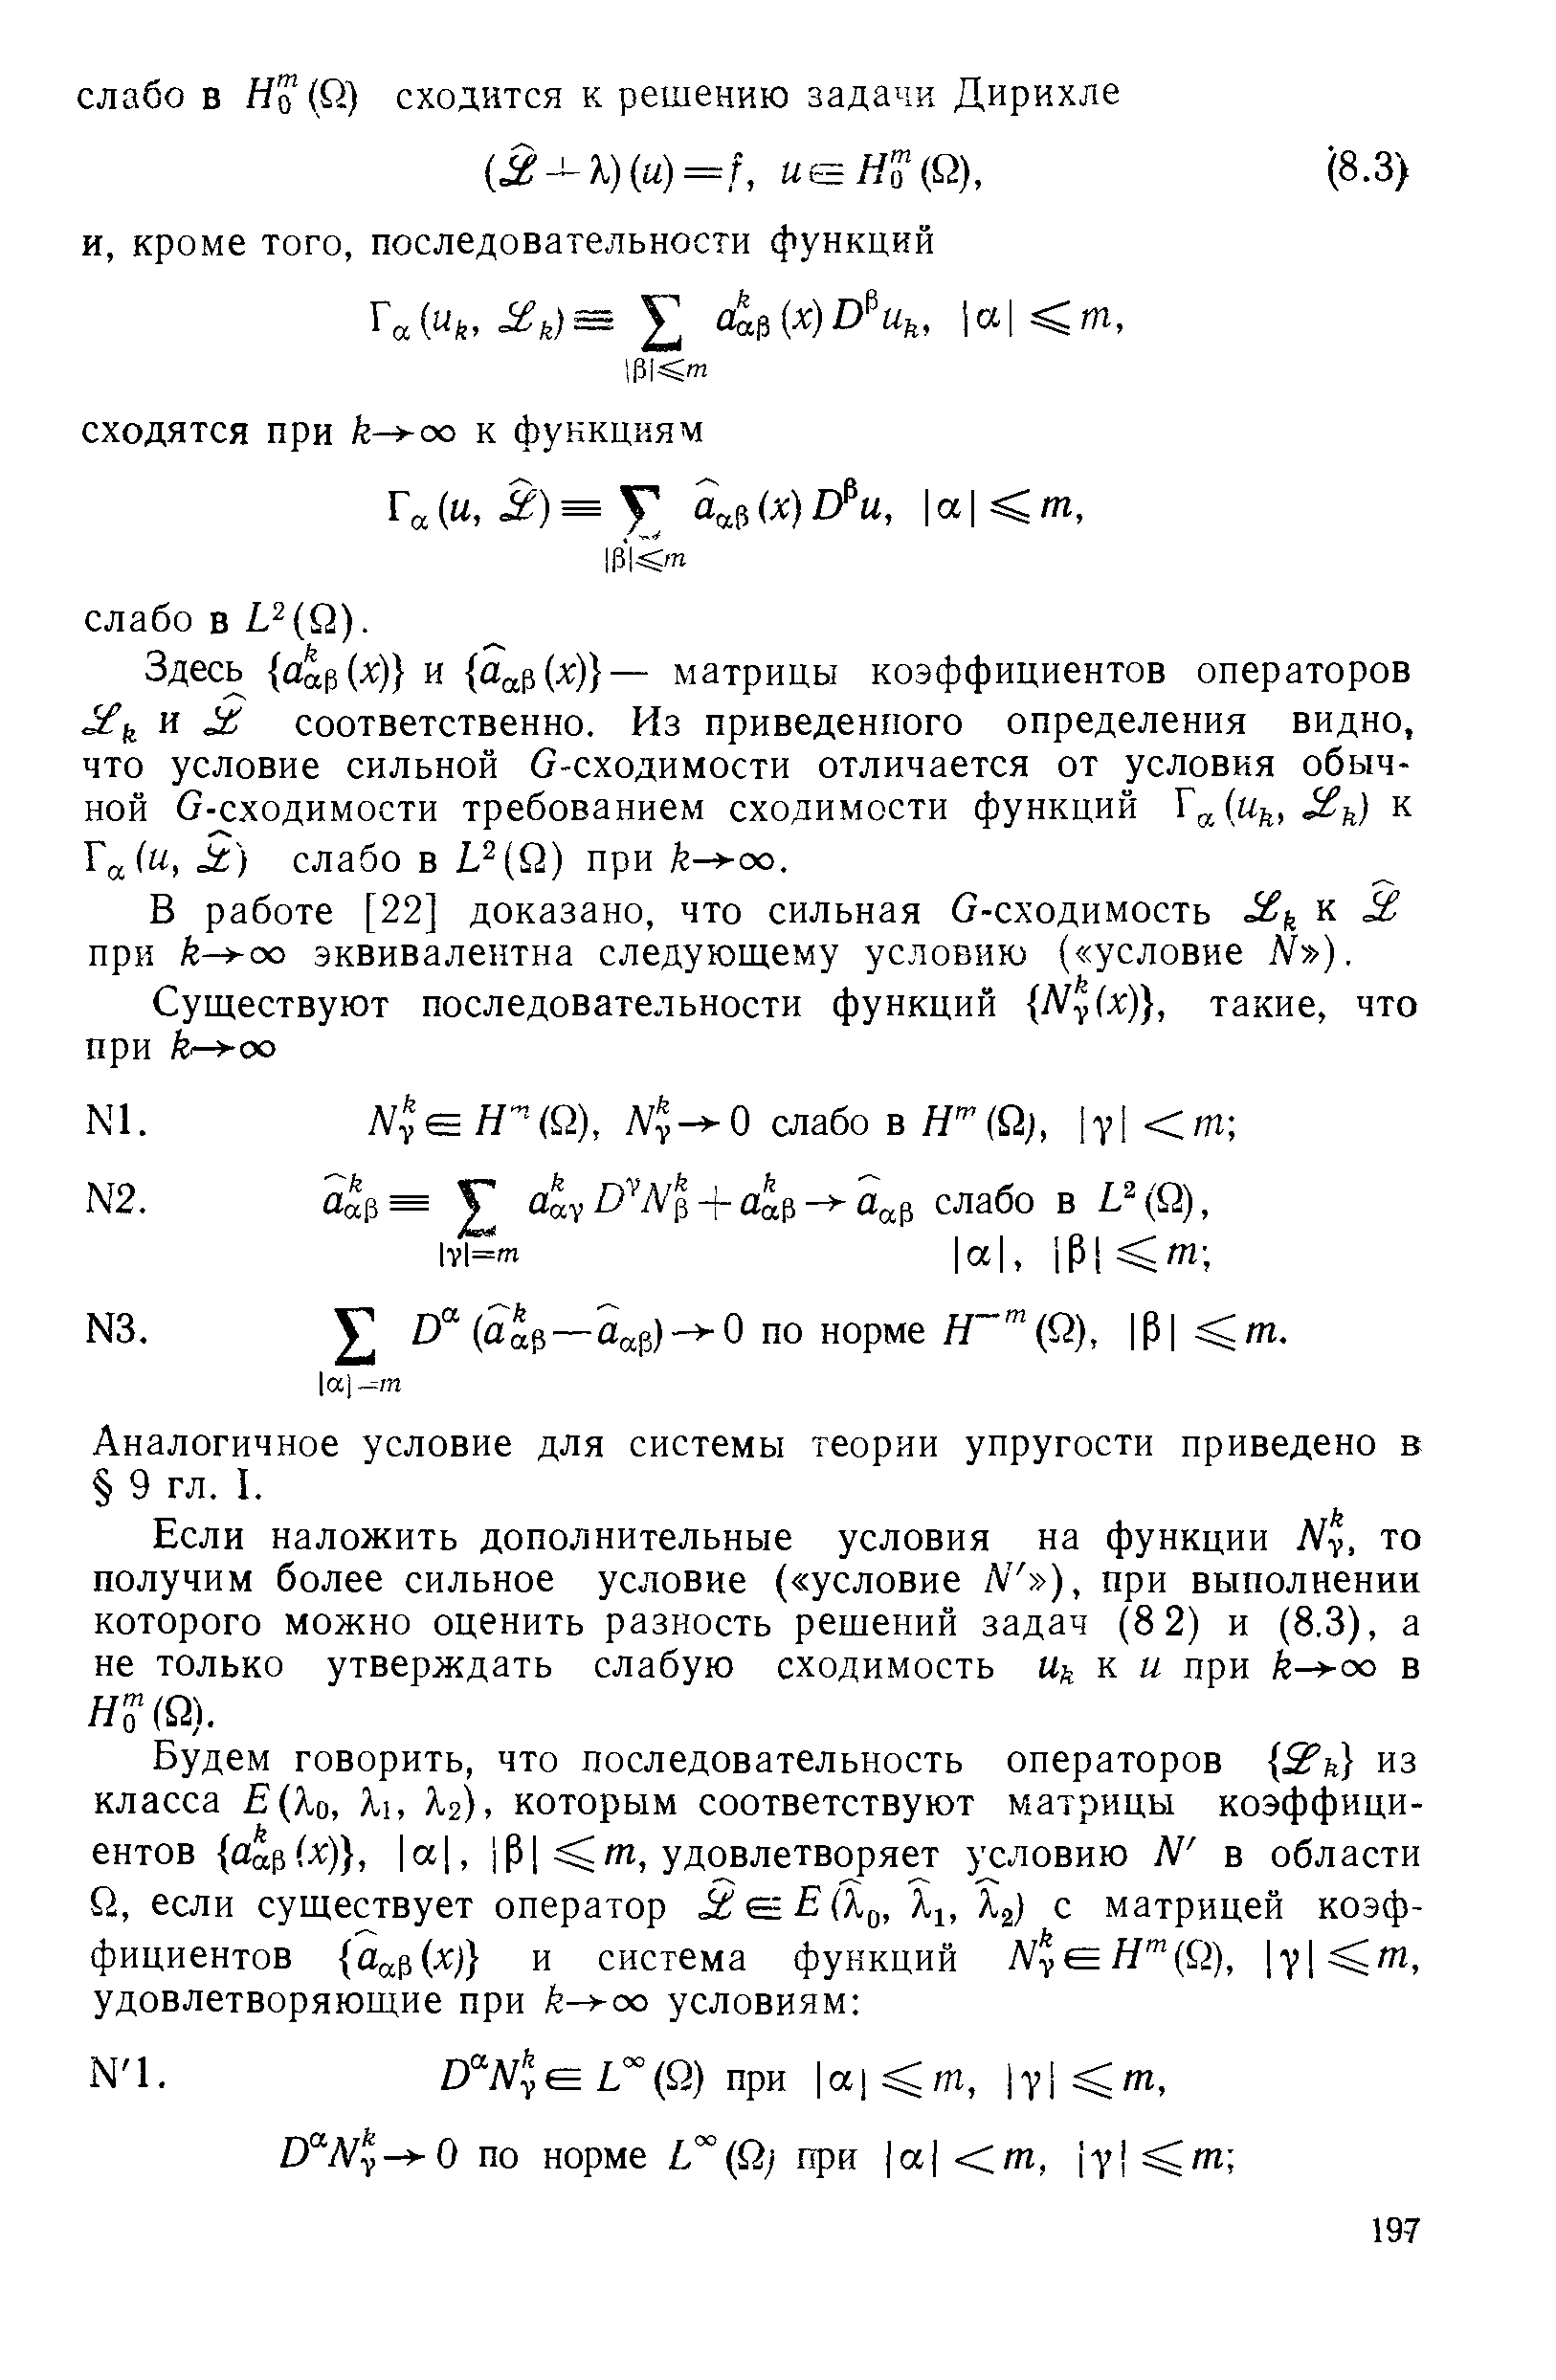 В работе [22] доказано, что сильная G-сходимость к a при k- oQ эквивалентна следующему условию ( условие N ).
